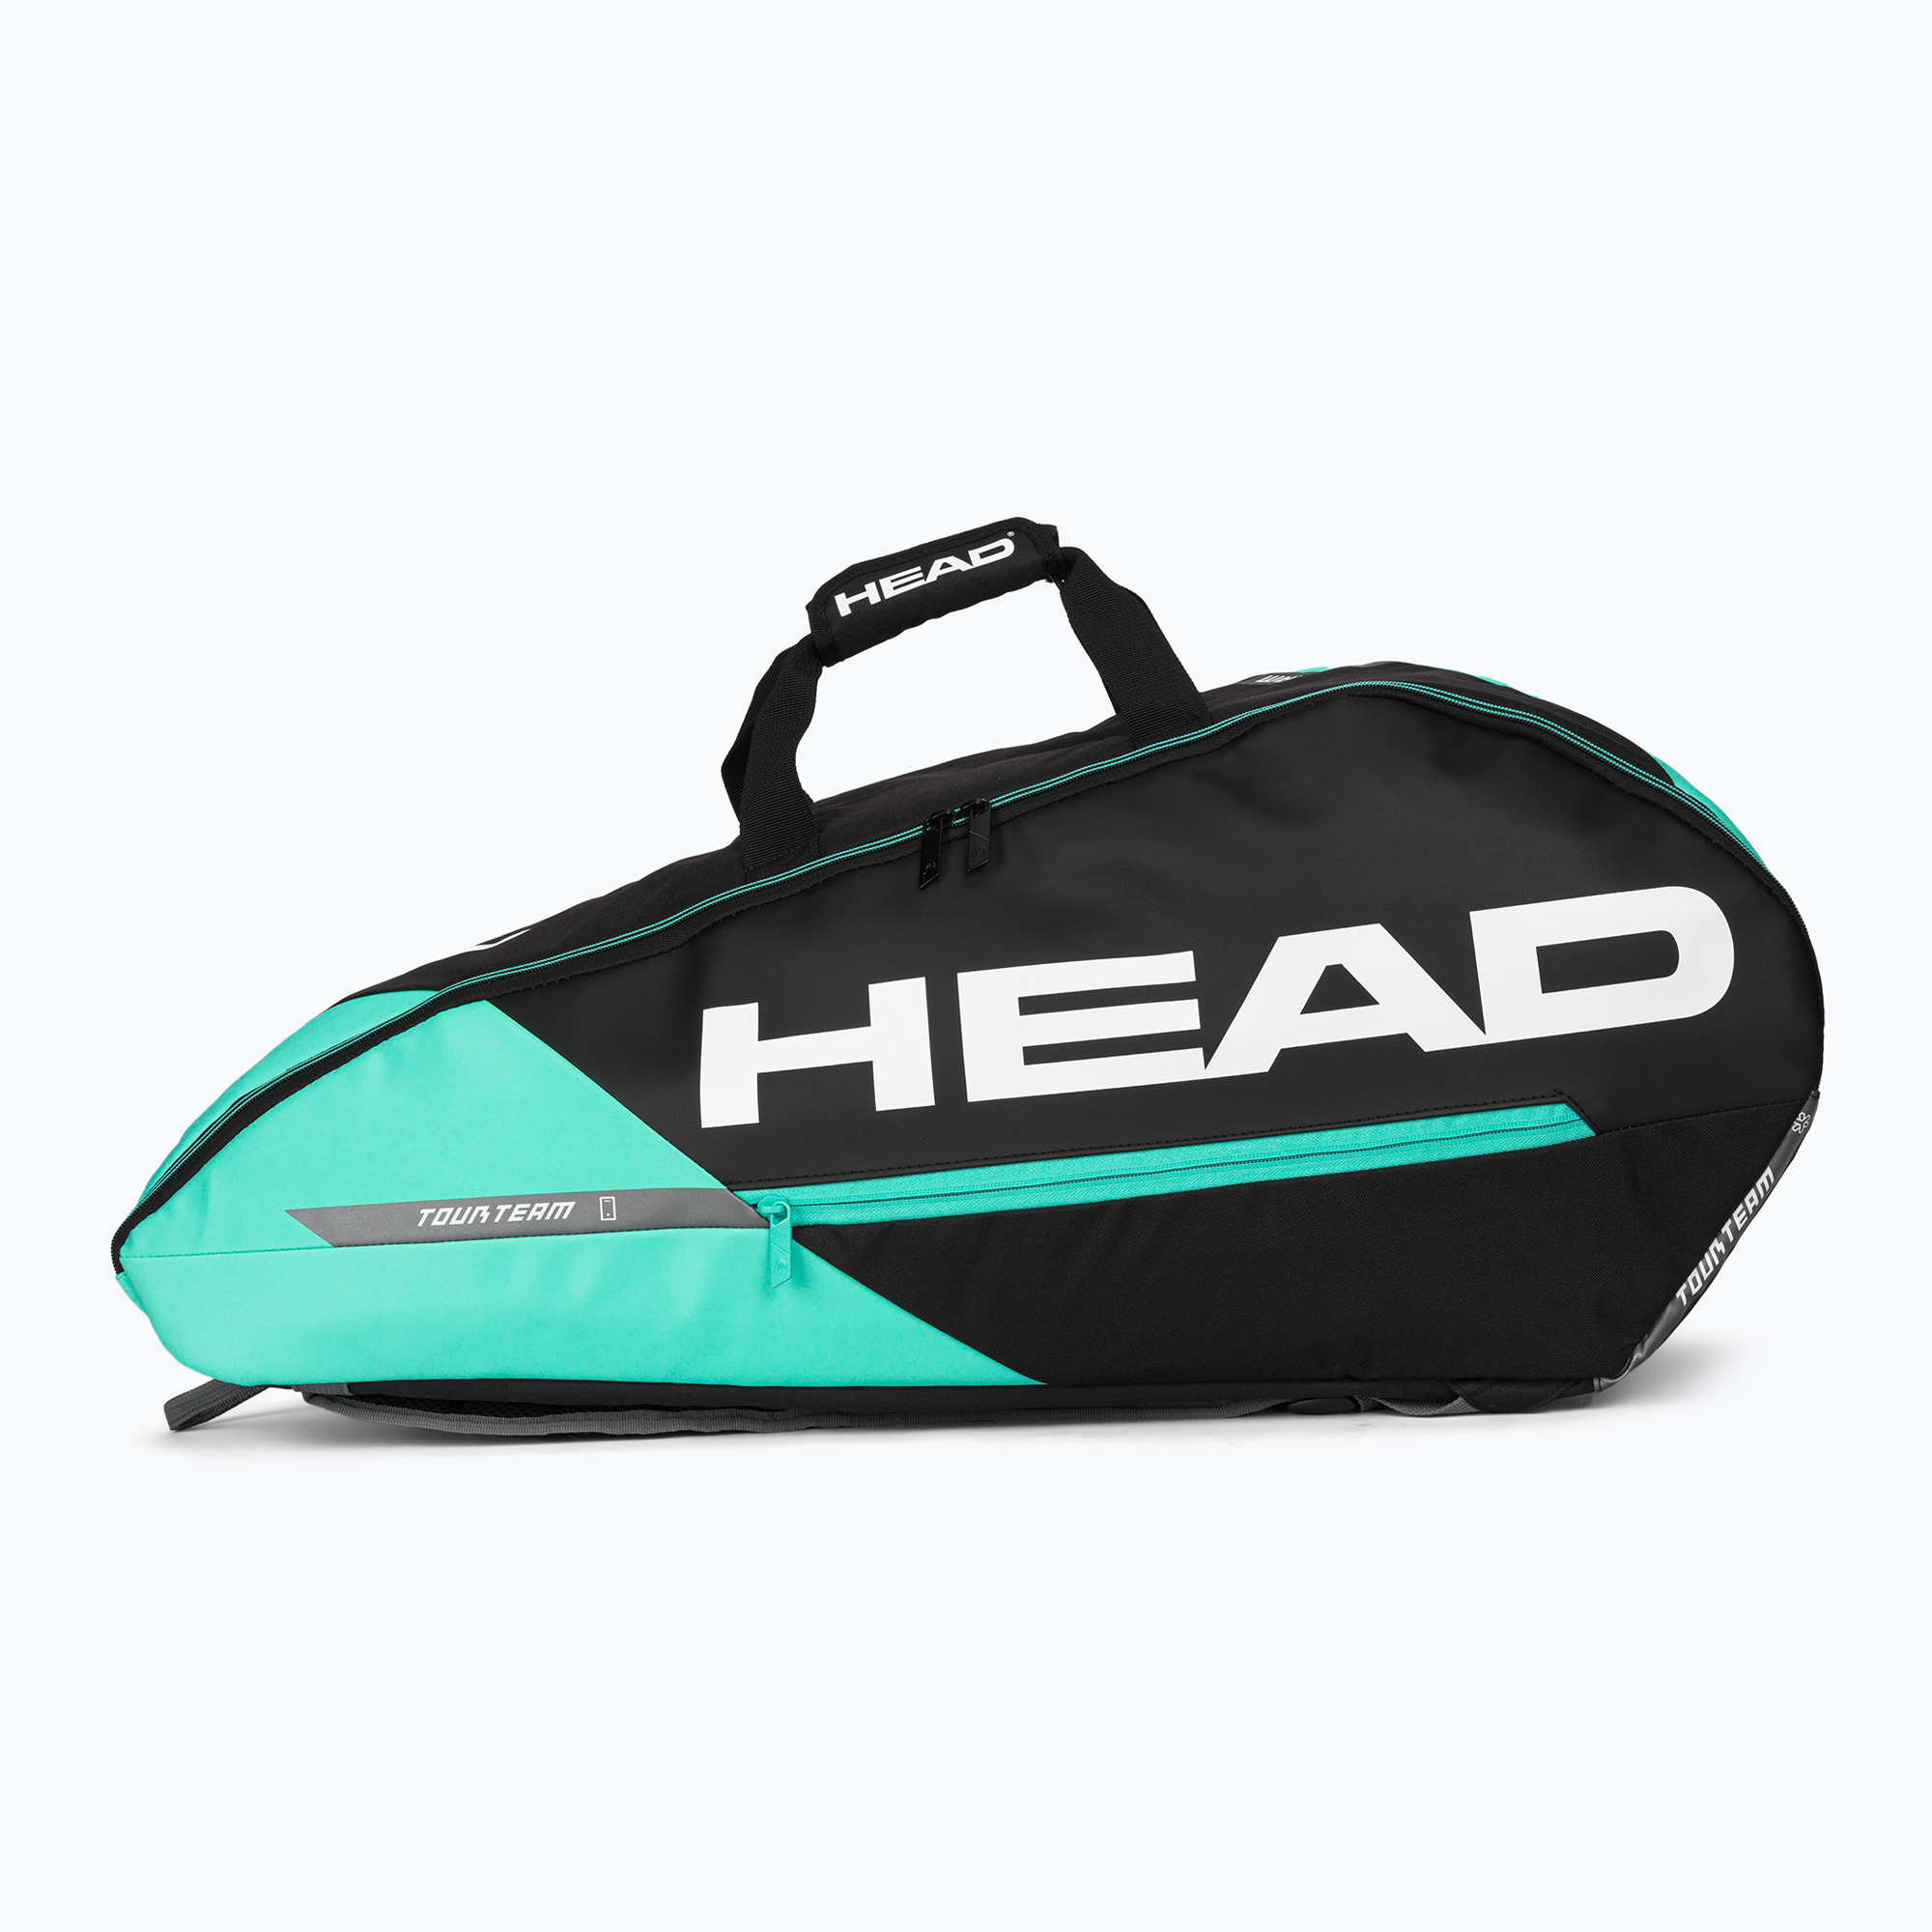 Geantă de tenis HEAD Tour Team 6R 53.5 l negru/albastru 283482